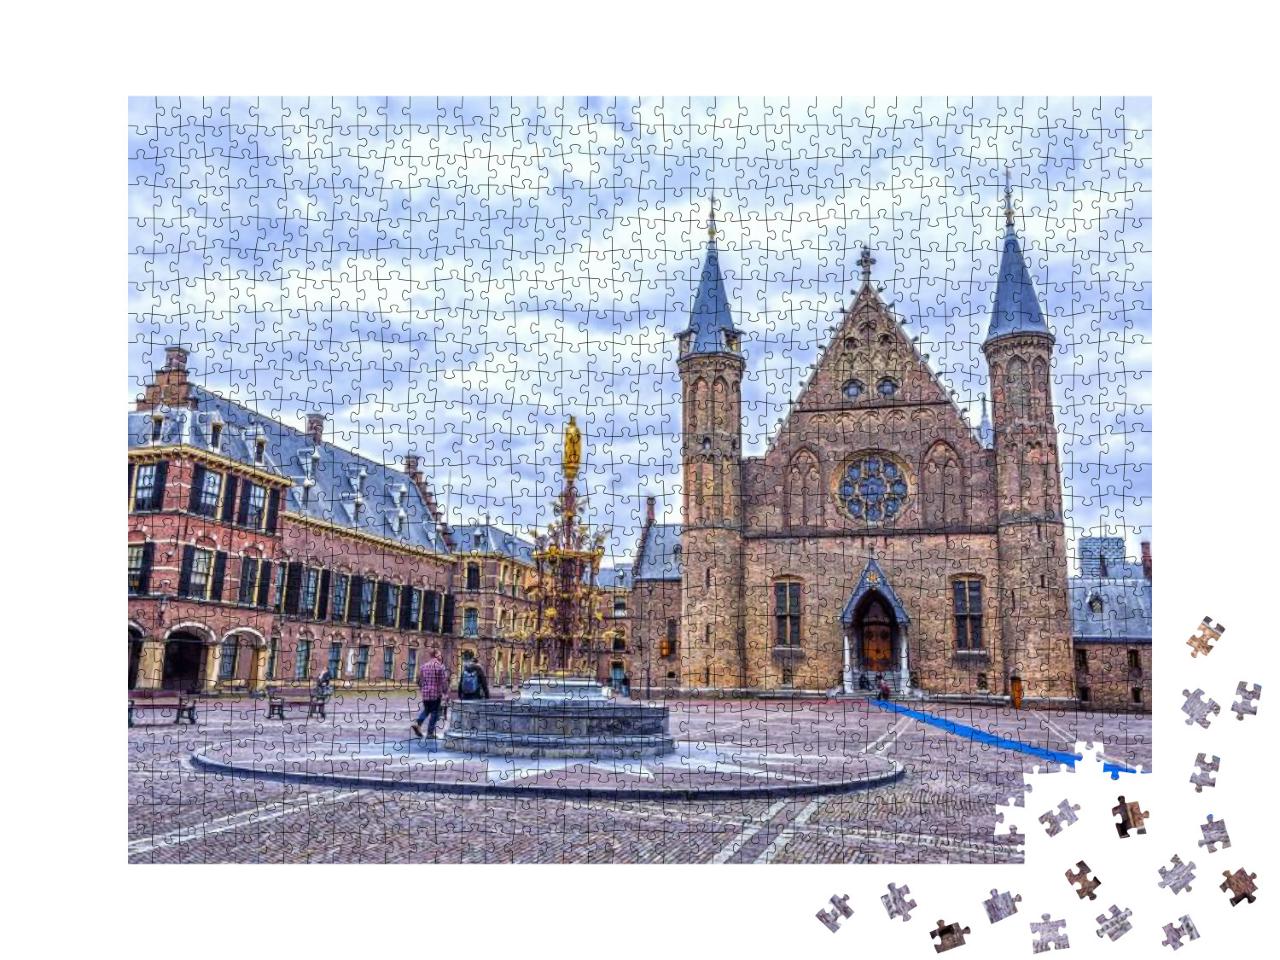 Puzzle 1000 Teile „Binnenhof Palast, Sitz des holländischen Parlaments in Den Haag“